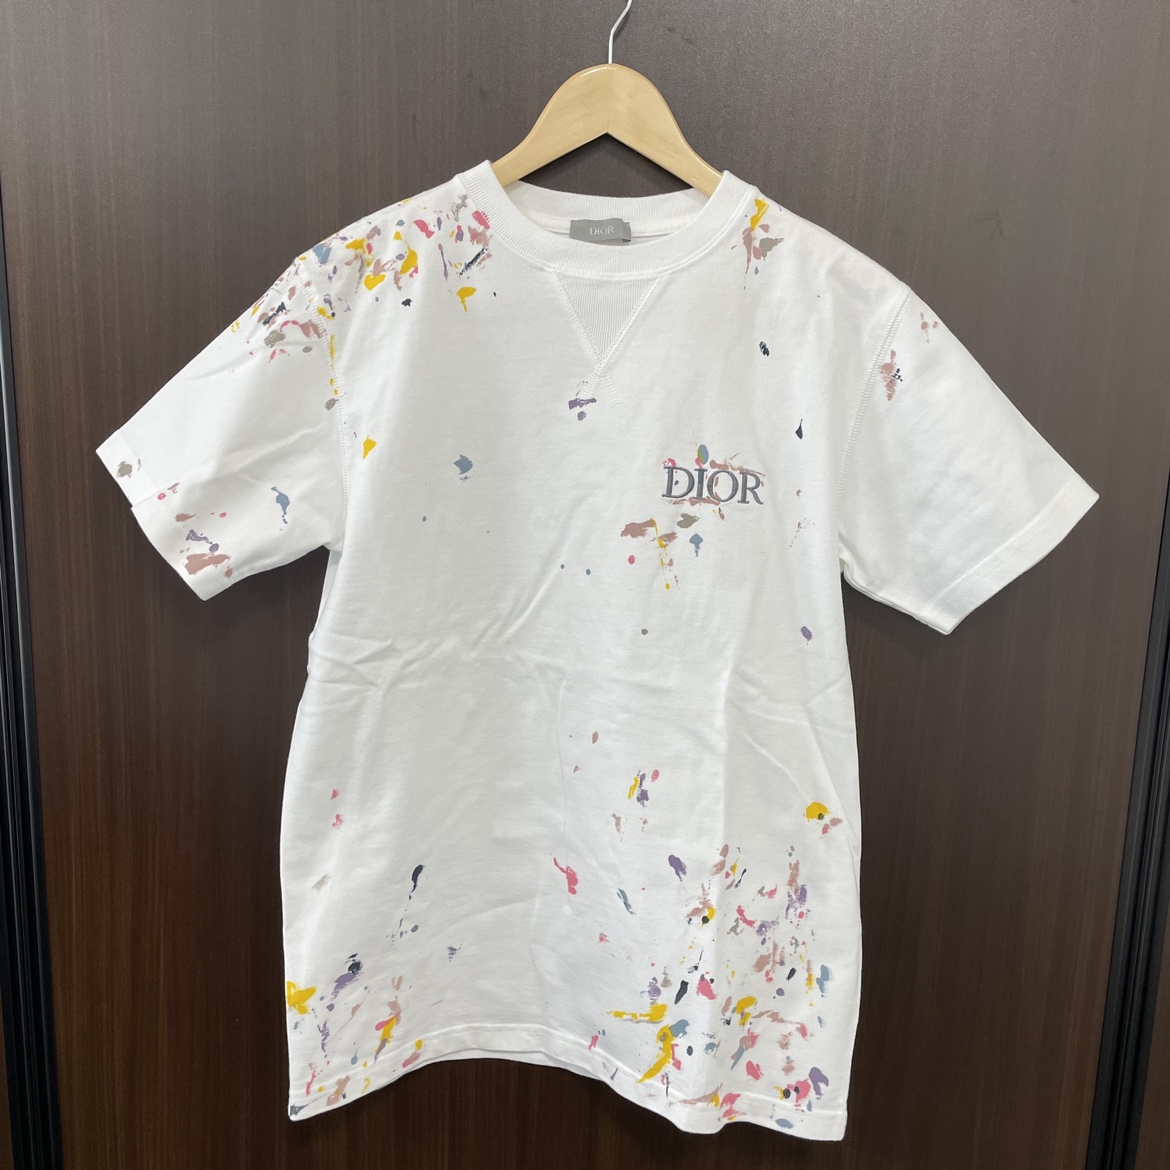 ディオールオムの21SS ホワイト ペイント加工ロゴ Tシャツ 183J686A0554の買取実績です。